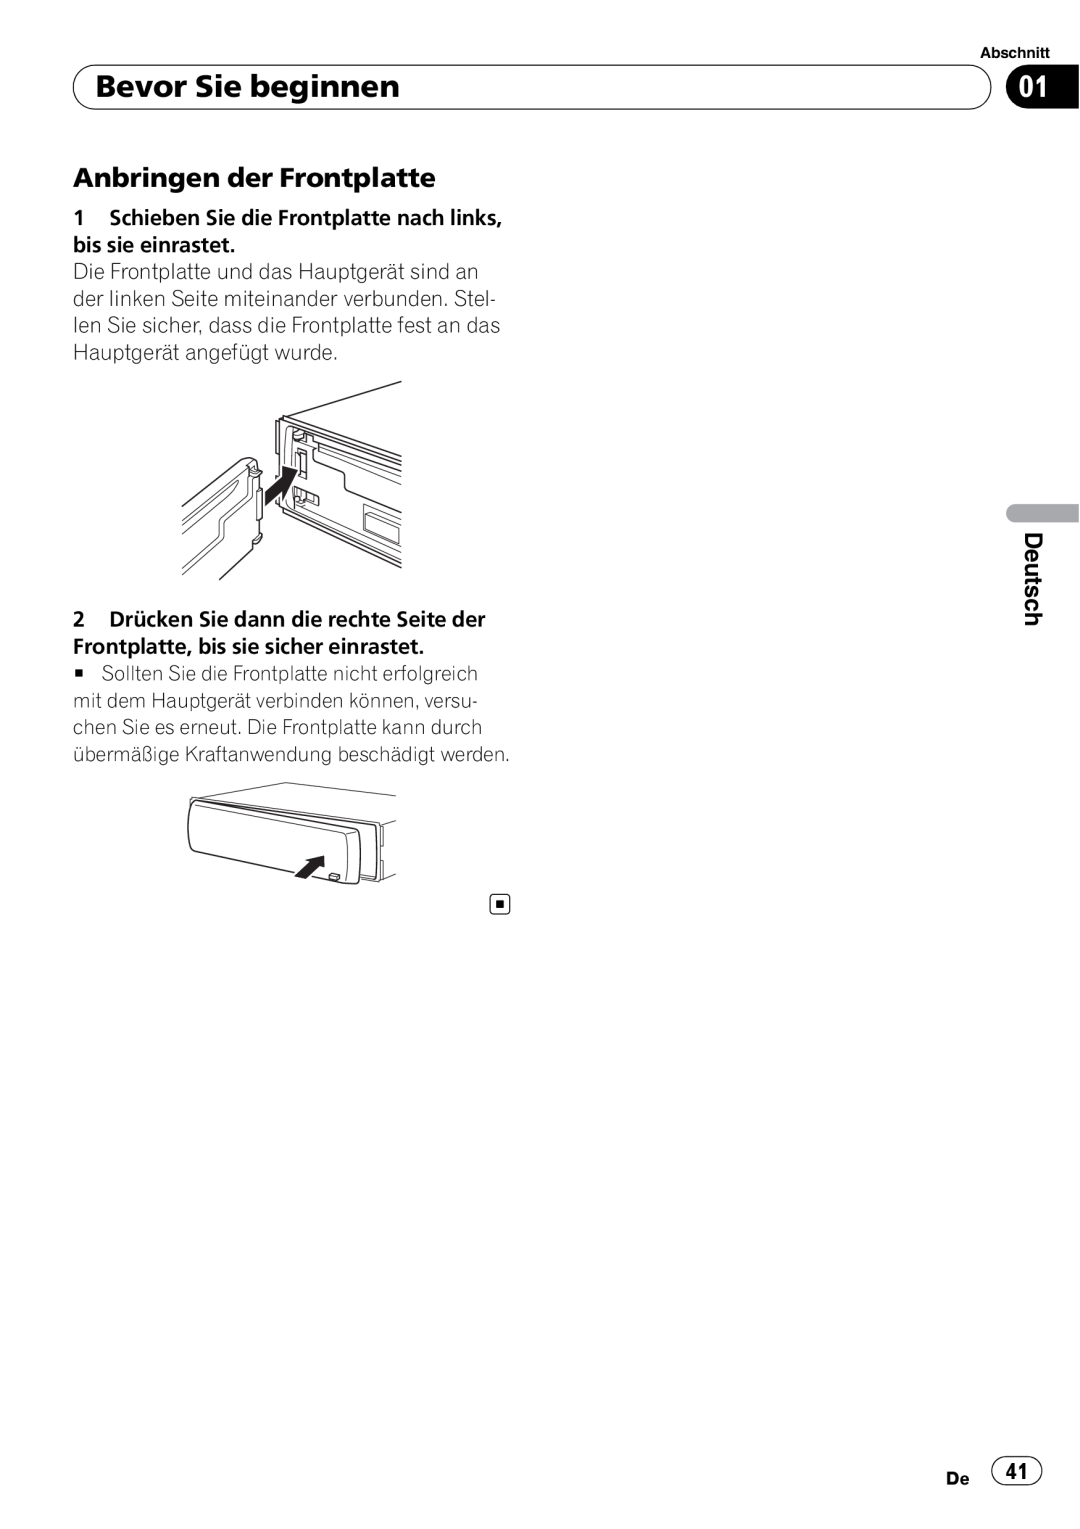 Pioneer DEH-3000MP operation manual Anbringen der Frontplatte, Bevor Sie beginnen, Deutsch 